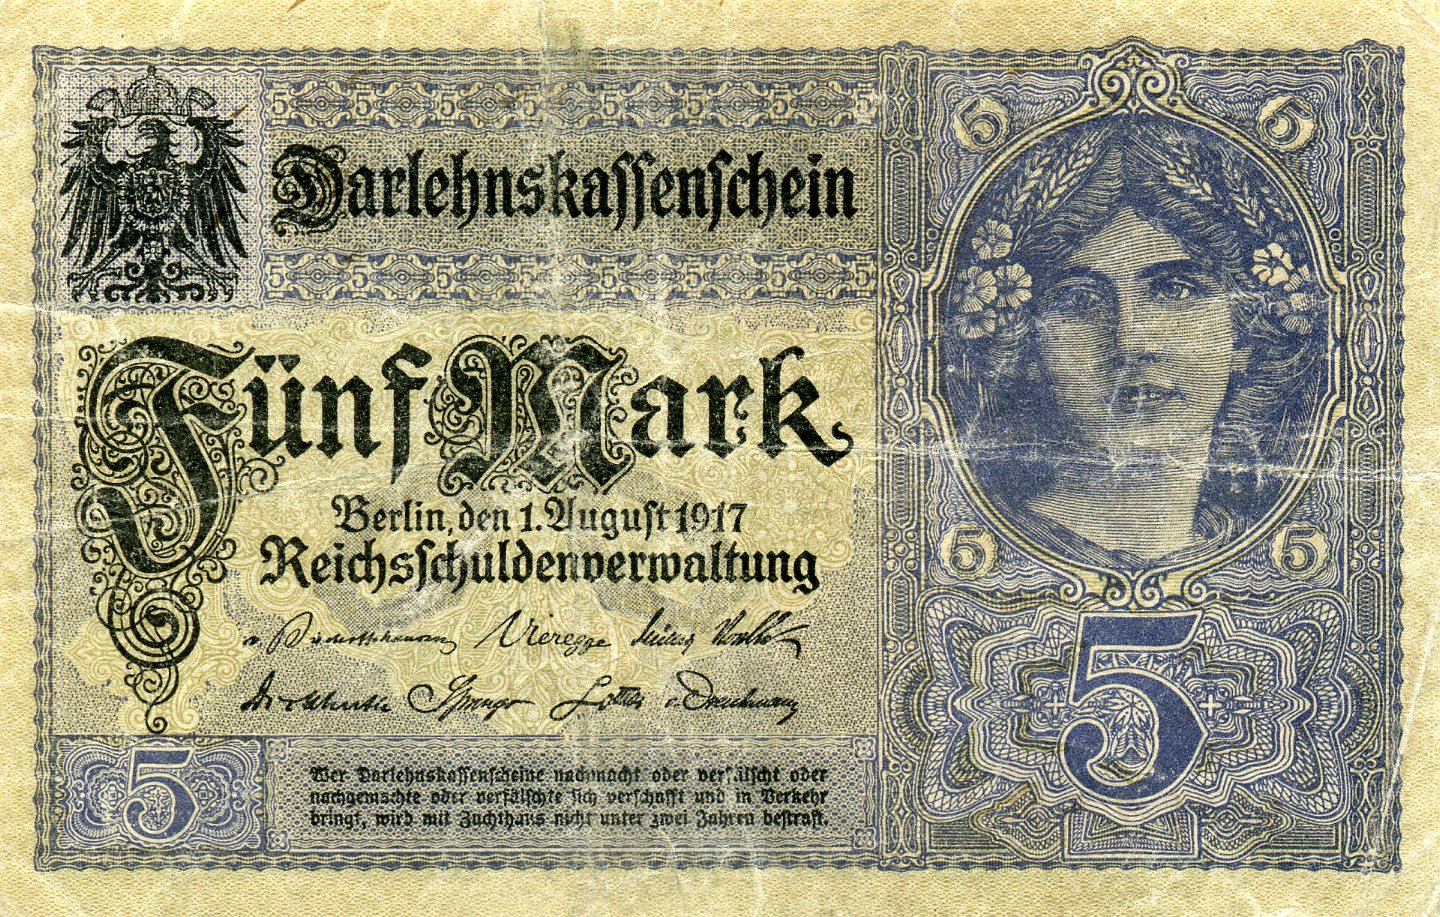 5 марок 1 августа 1917 года. Черная печать. Аверс. Реферат Рефератович.